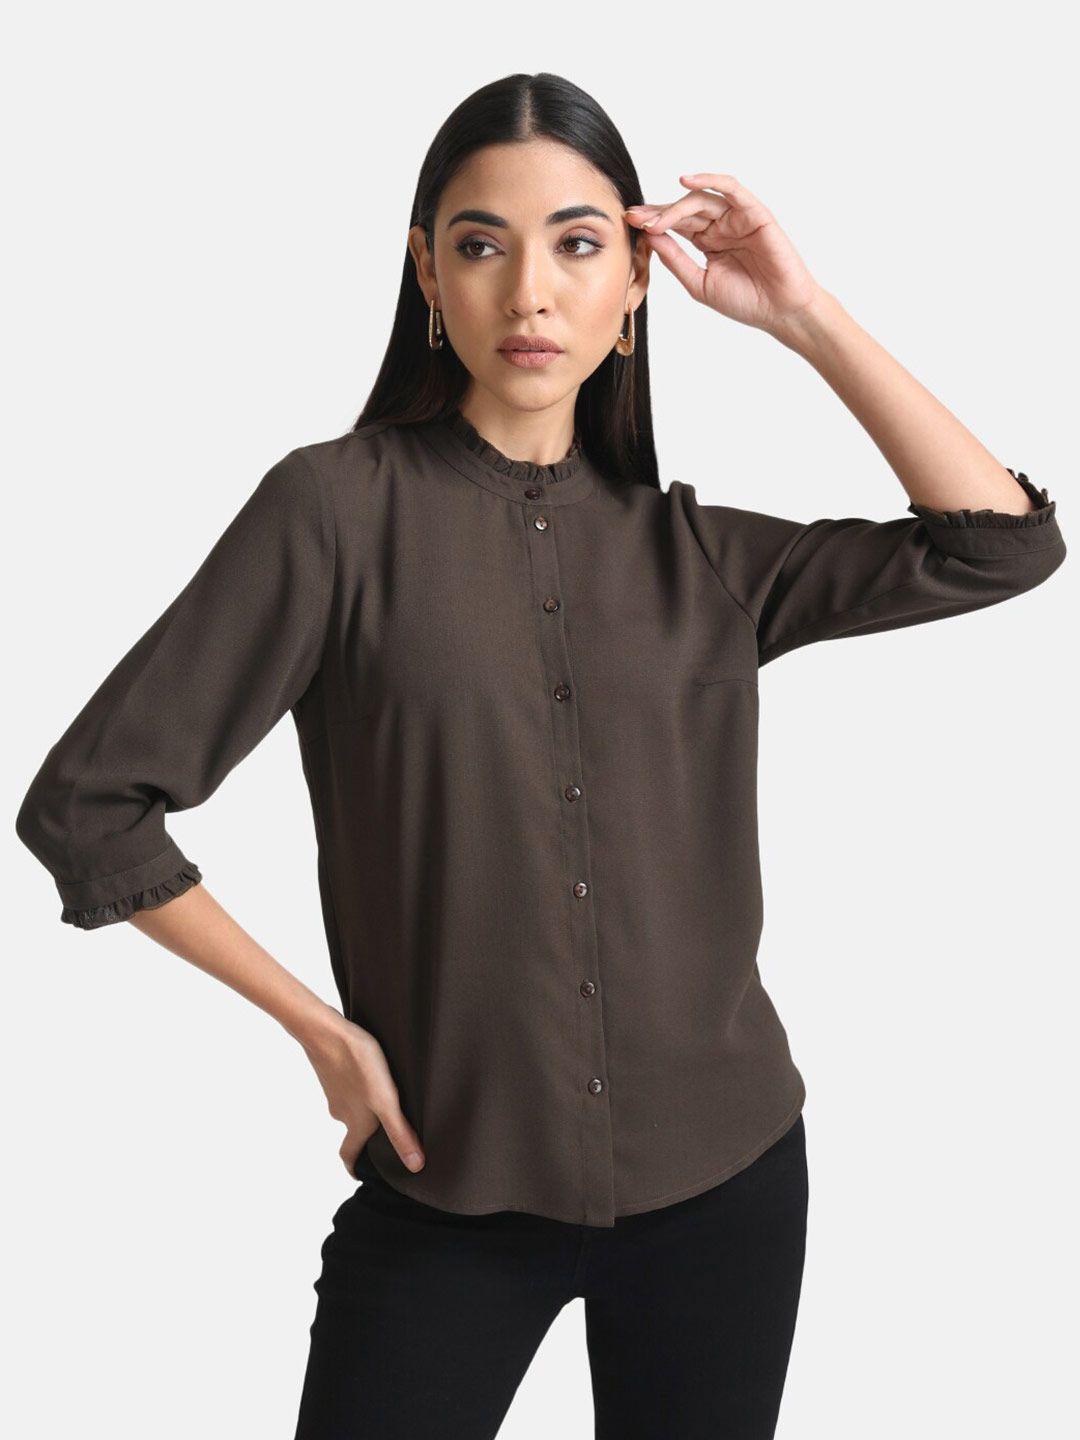 kazo women shirt style top